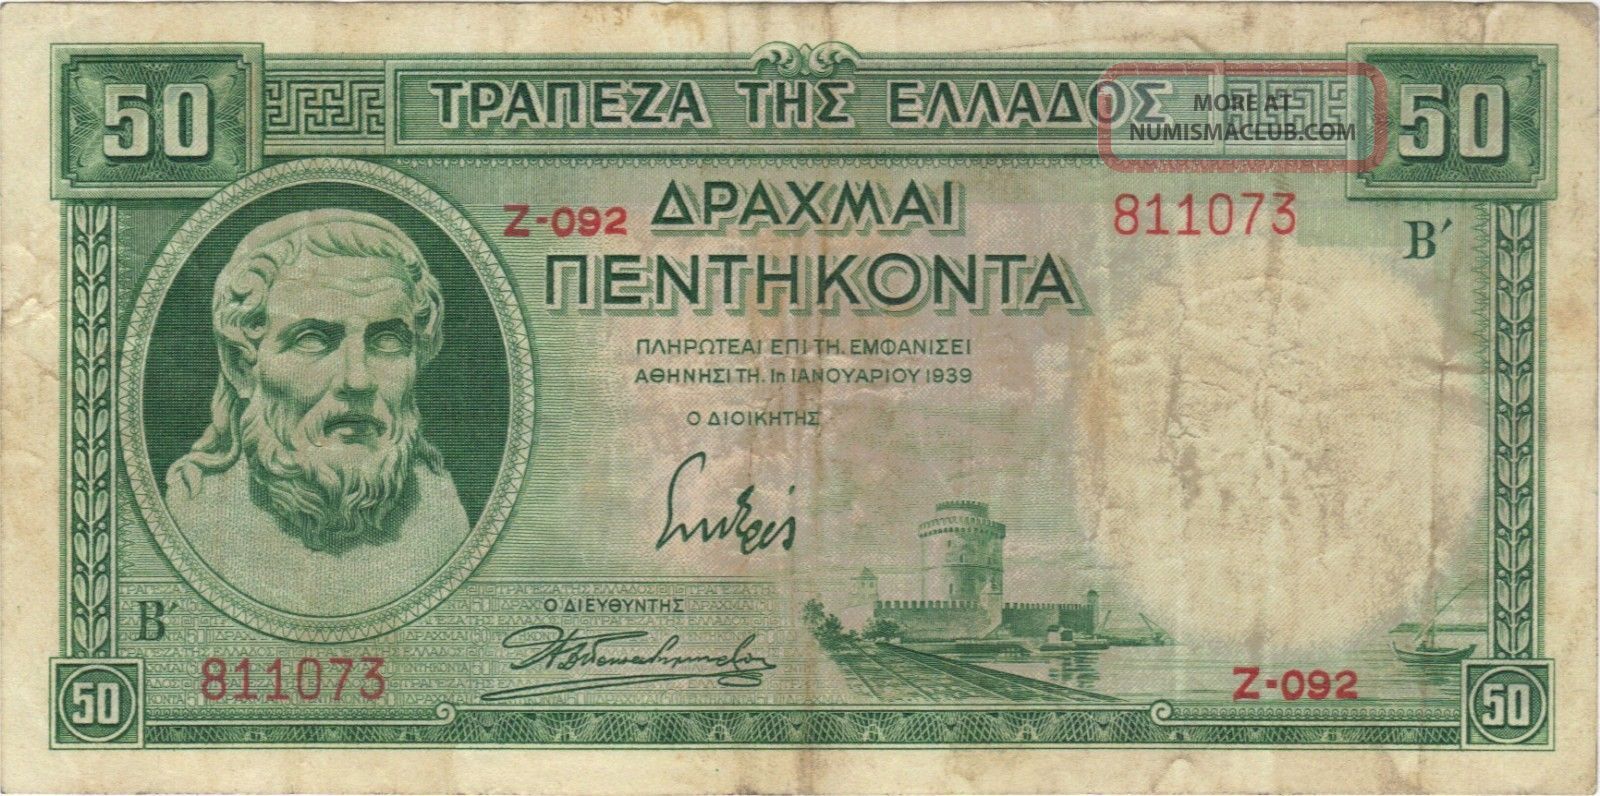 1939 50 Drachma Greece Greek Currency Banknote Note Money Bank Bill 